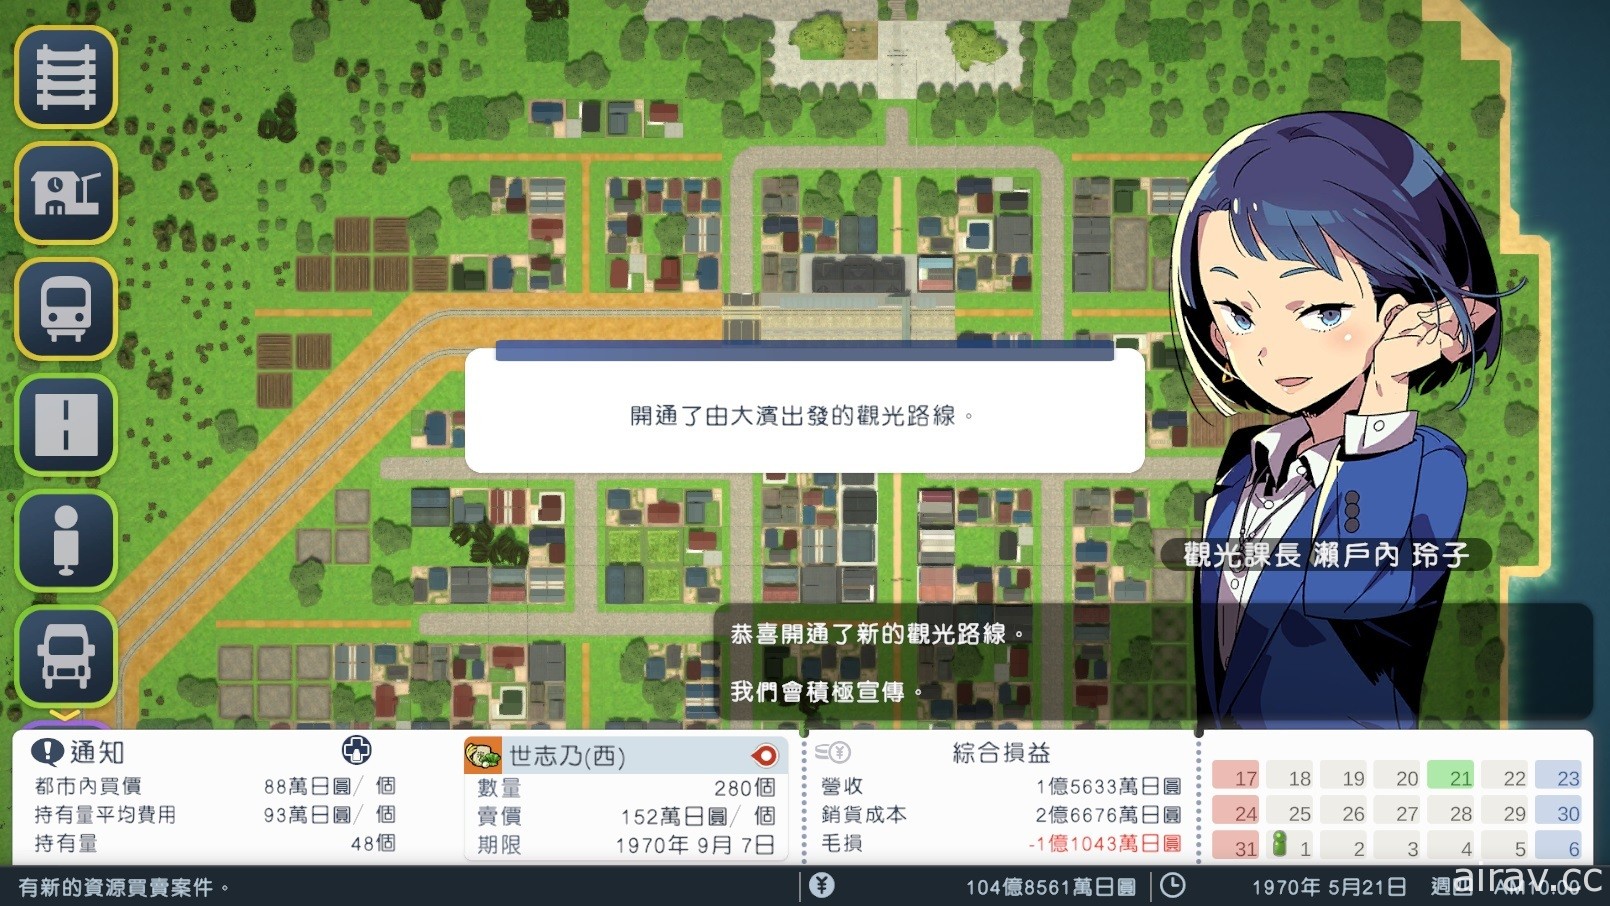 老牌都市開發鐵路模擬遊戲《A 列車 開始吧 觀光開發計畫》確定 12 月推出 Steam 版